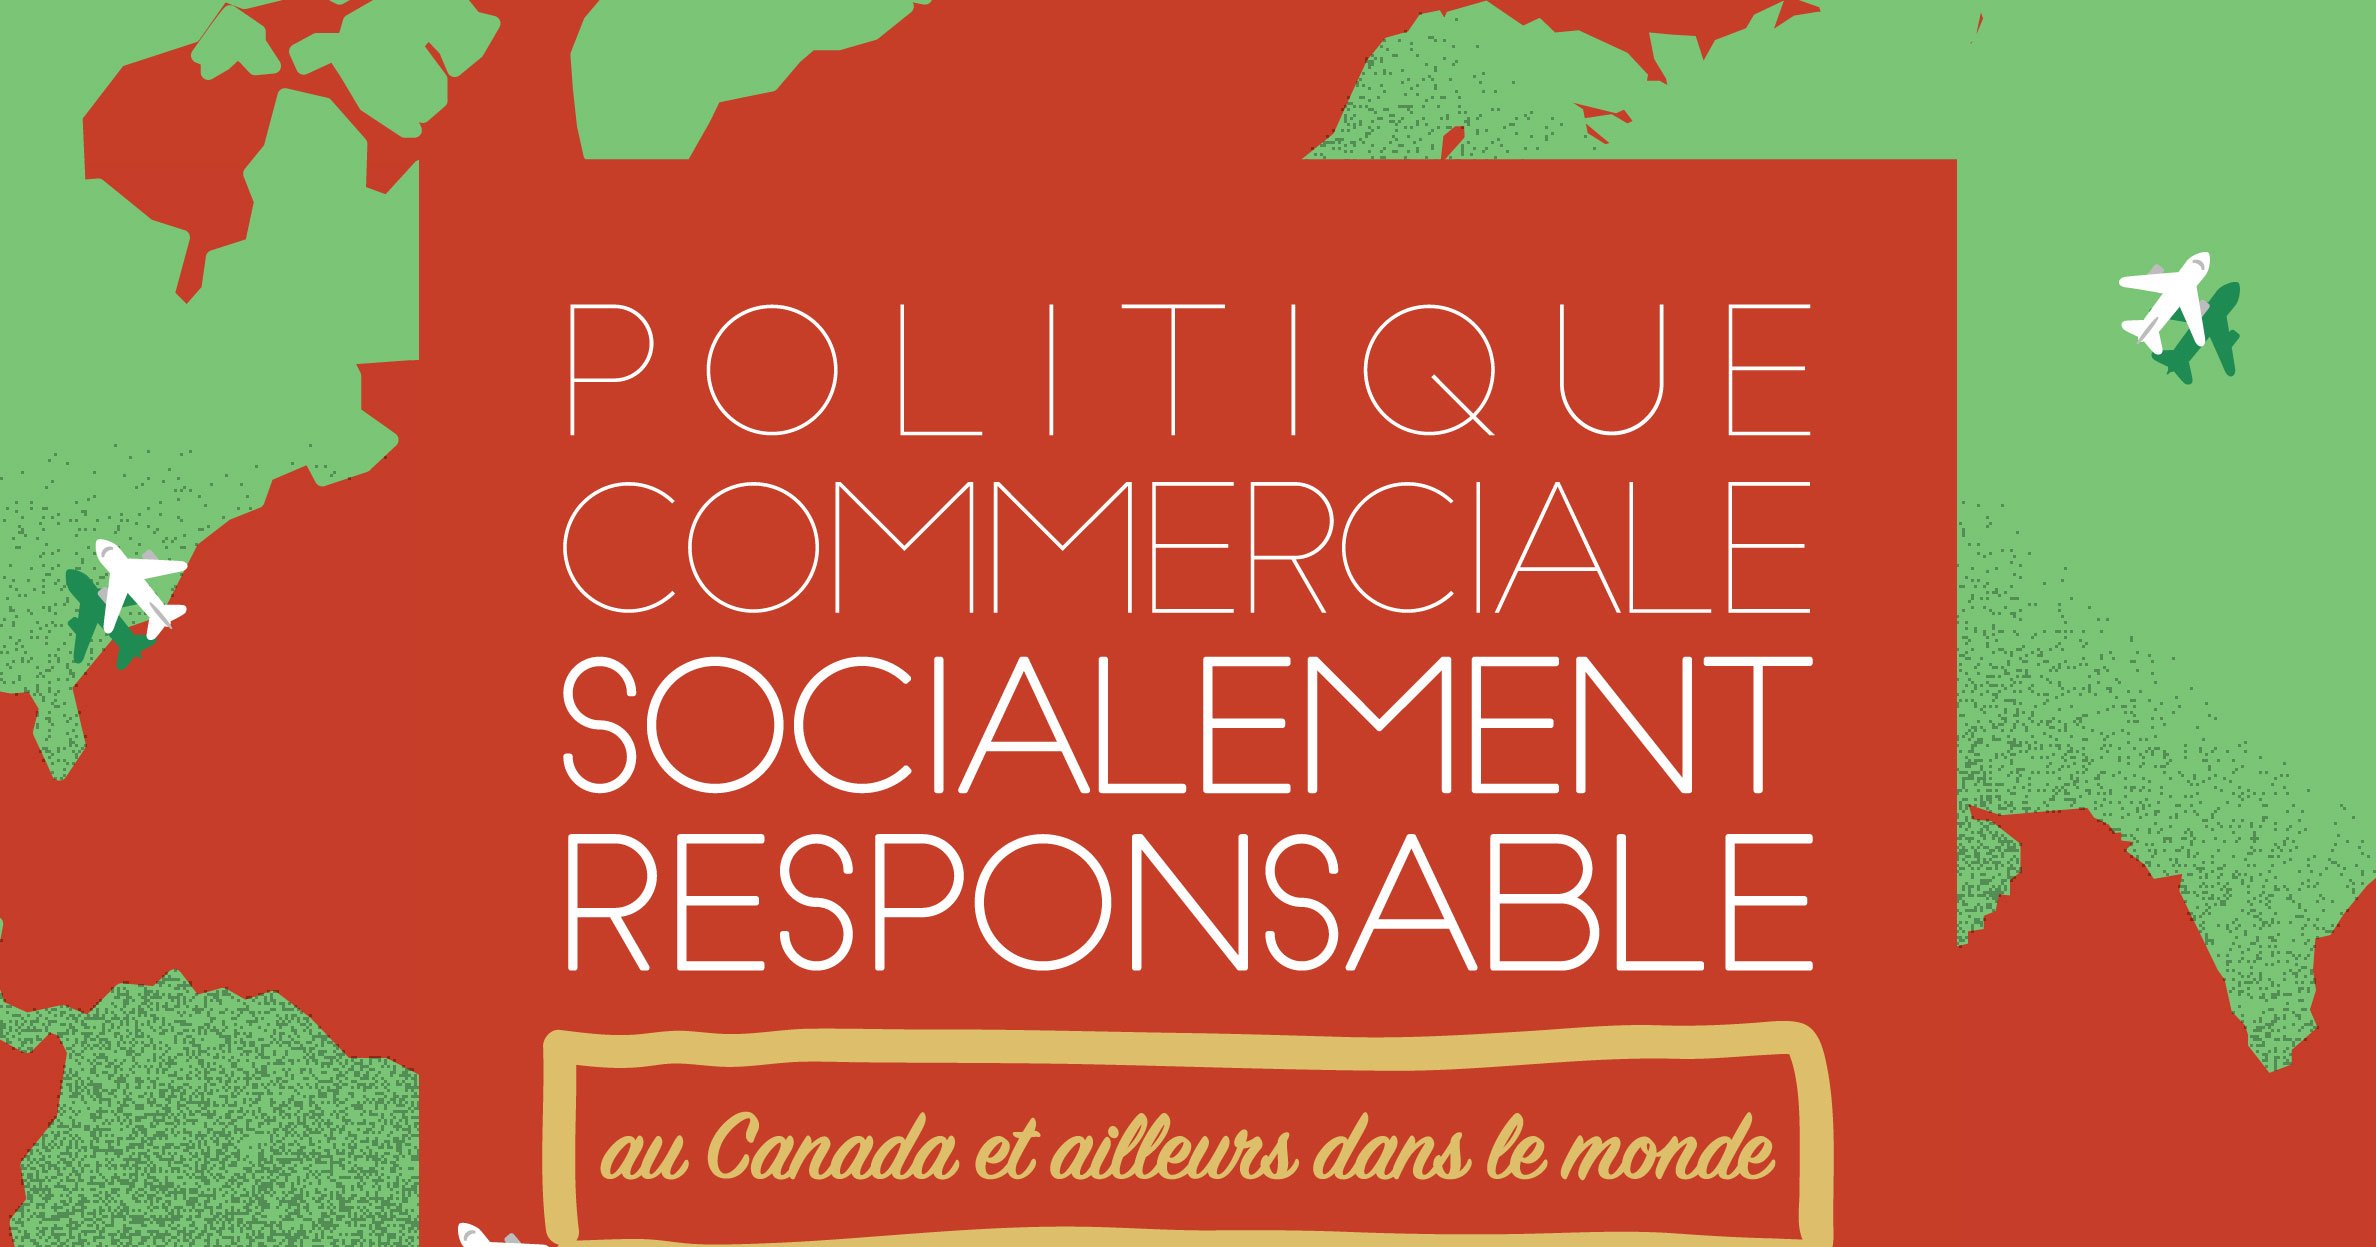 Politique commerciale socialement responsable – au Canada et ailleurs dans le monde